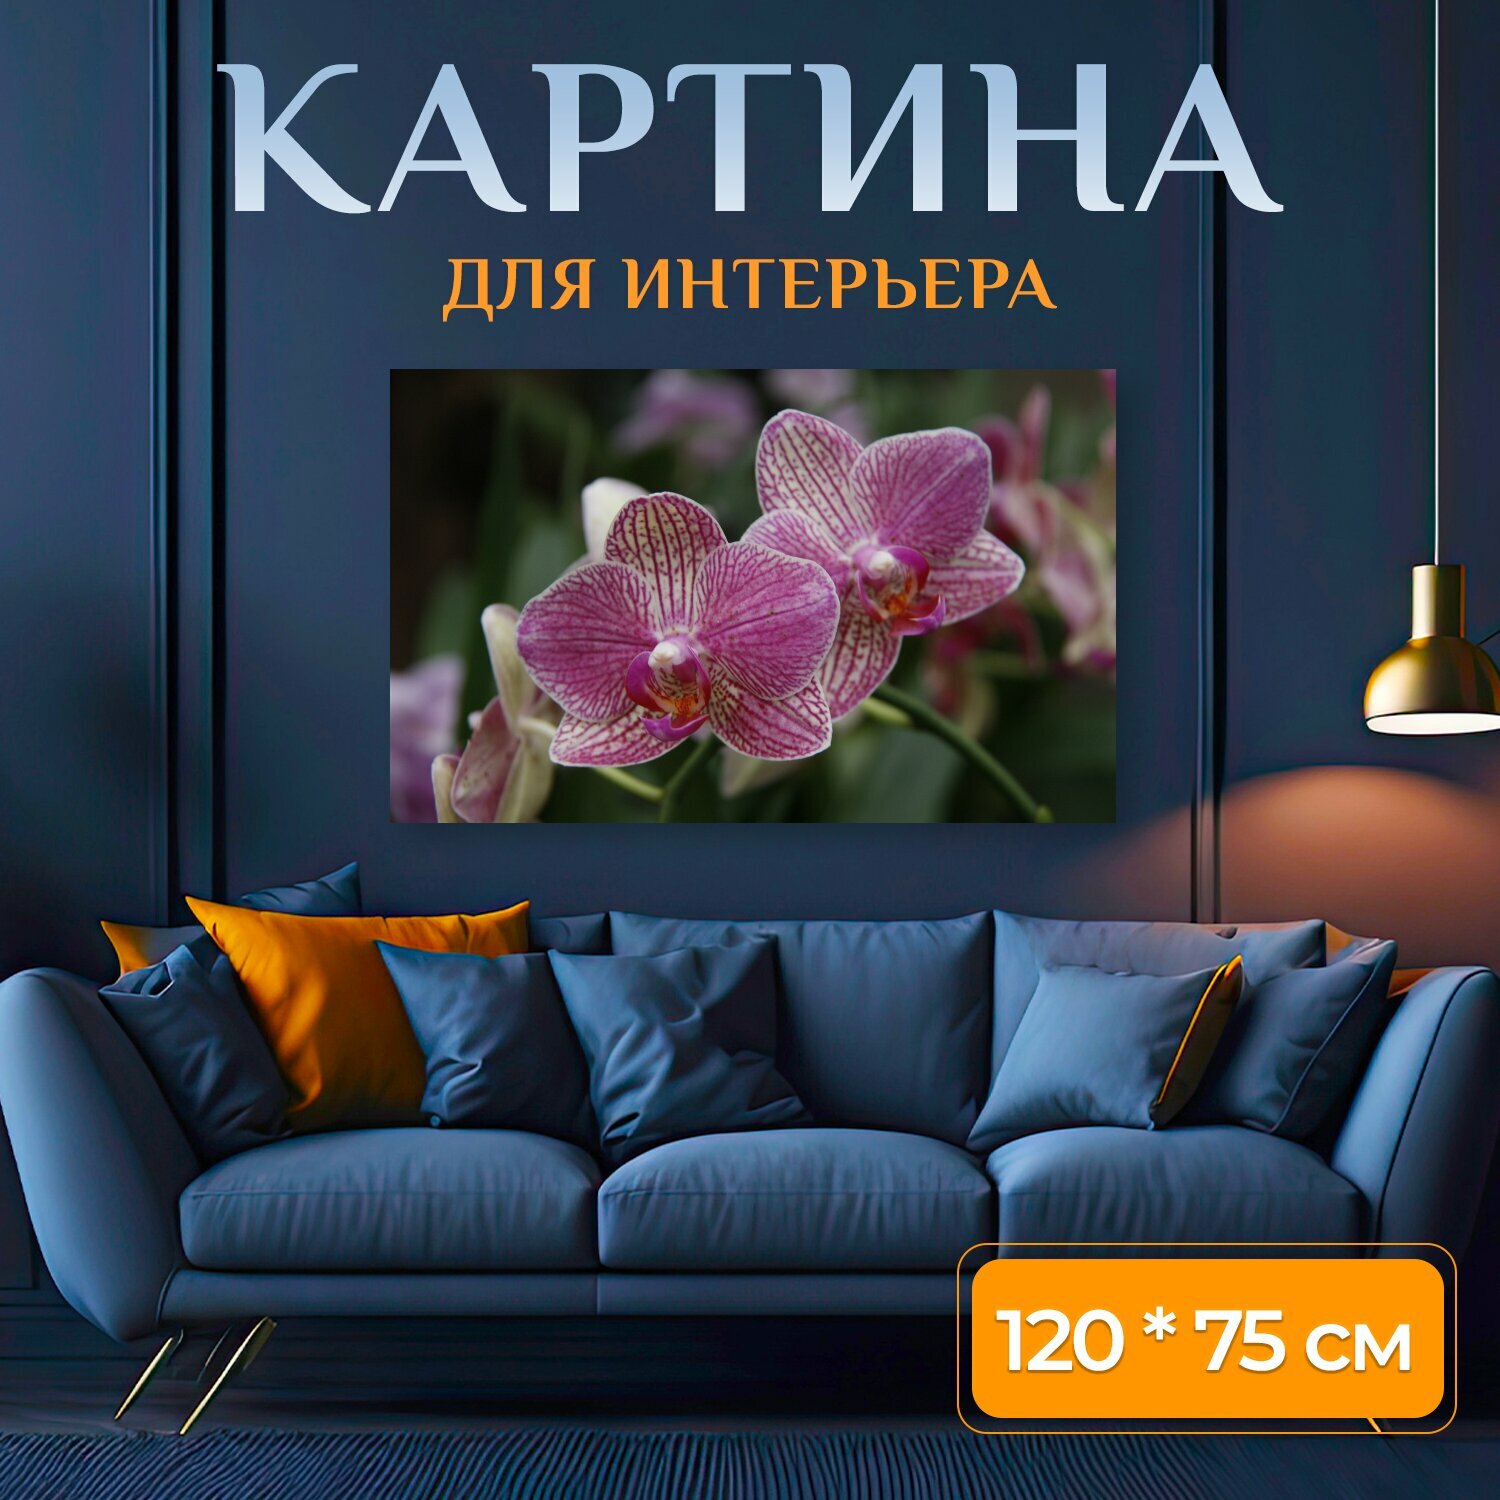 Картина на холсте "Орхидея, фаленопсис, сад" на подрамнике 120х75 см. для интерьера